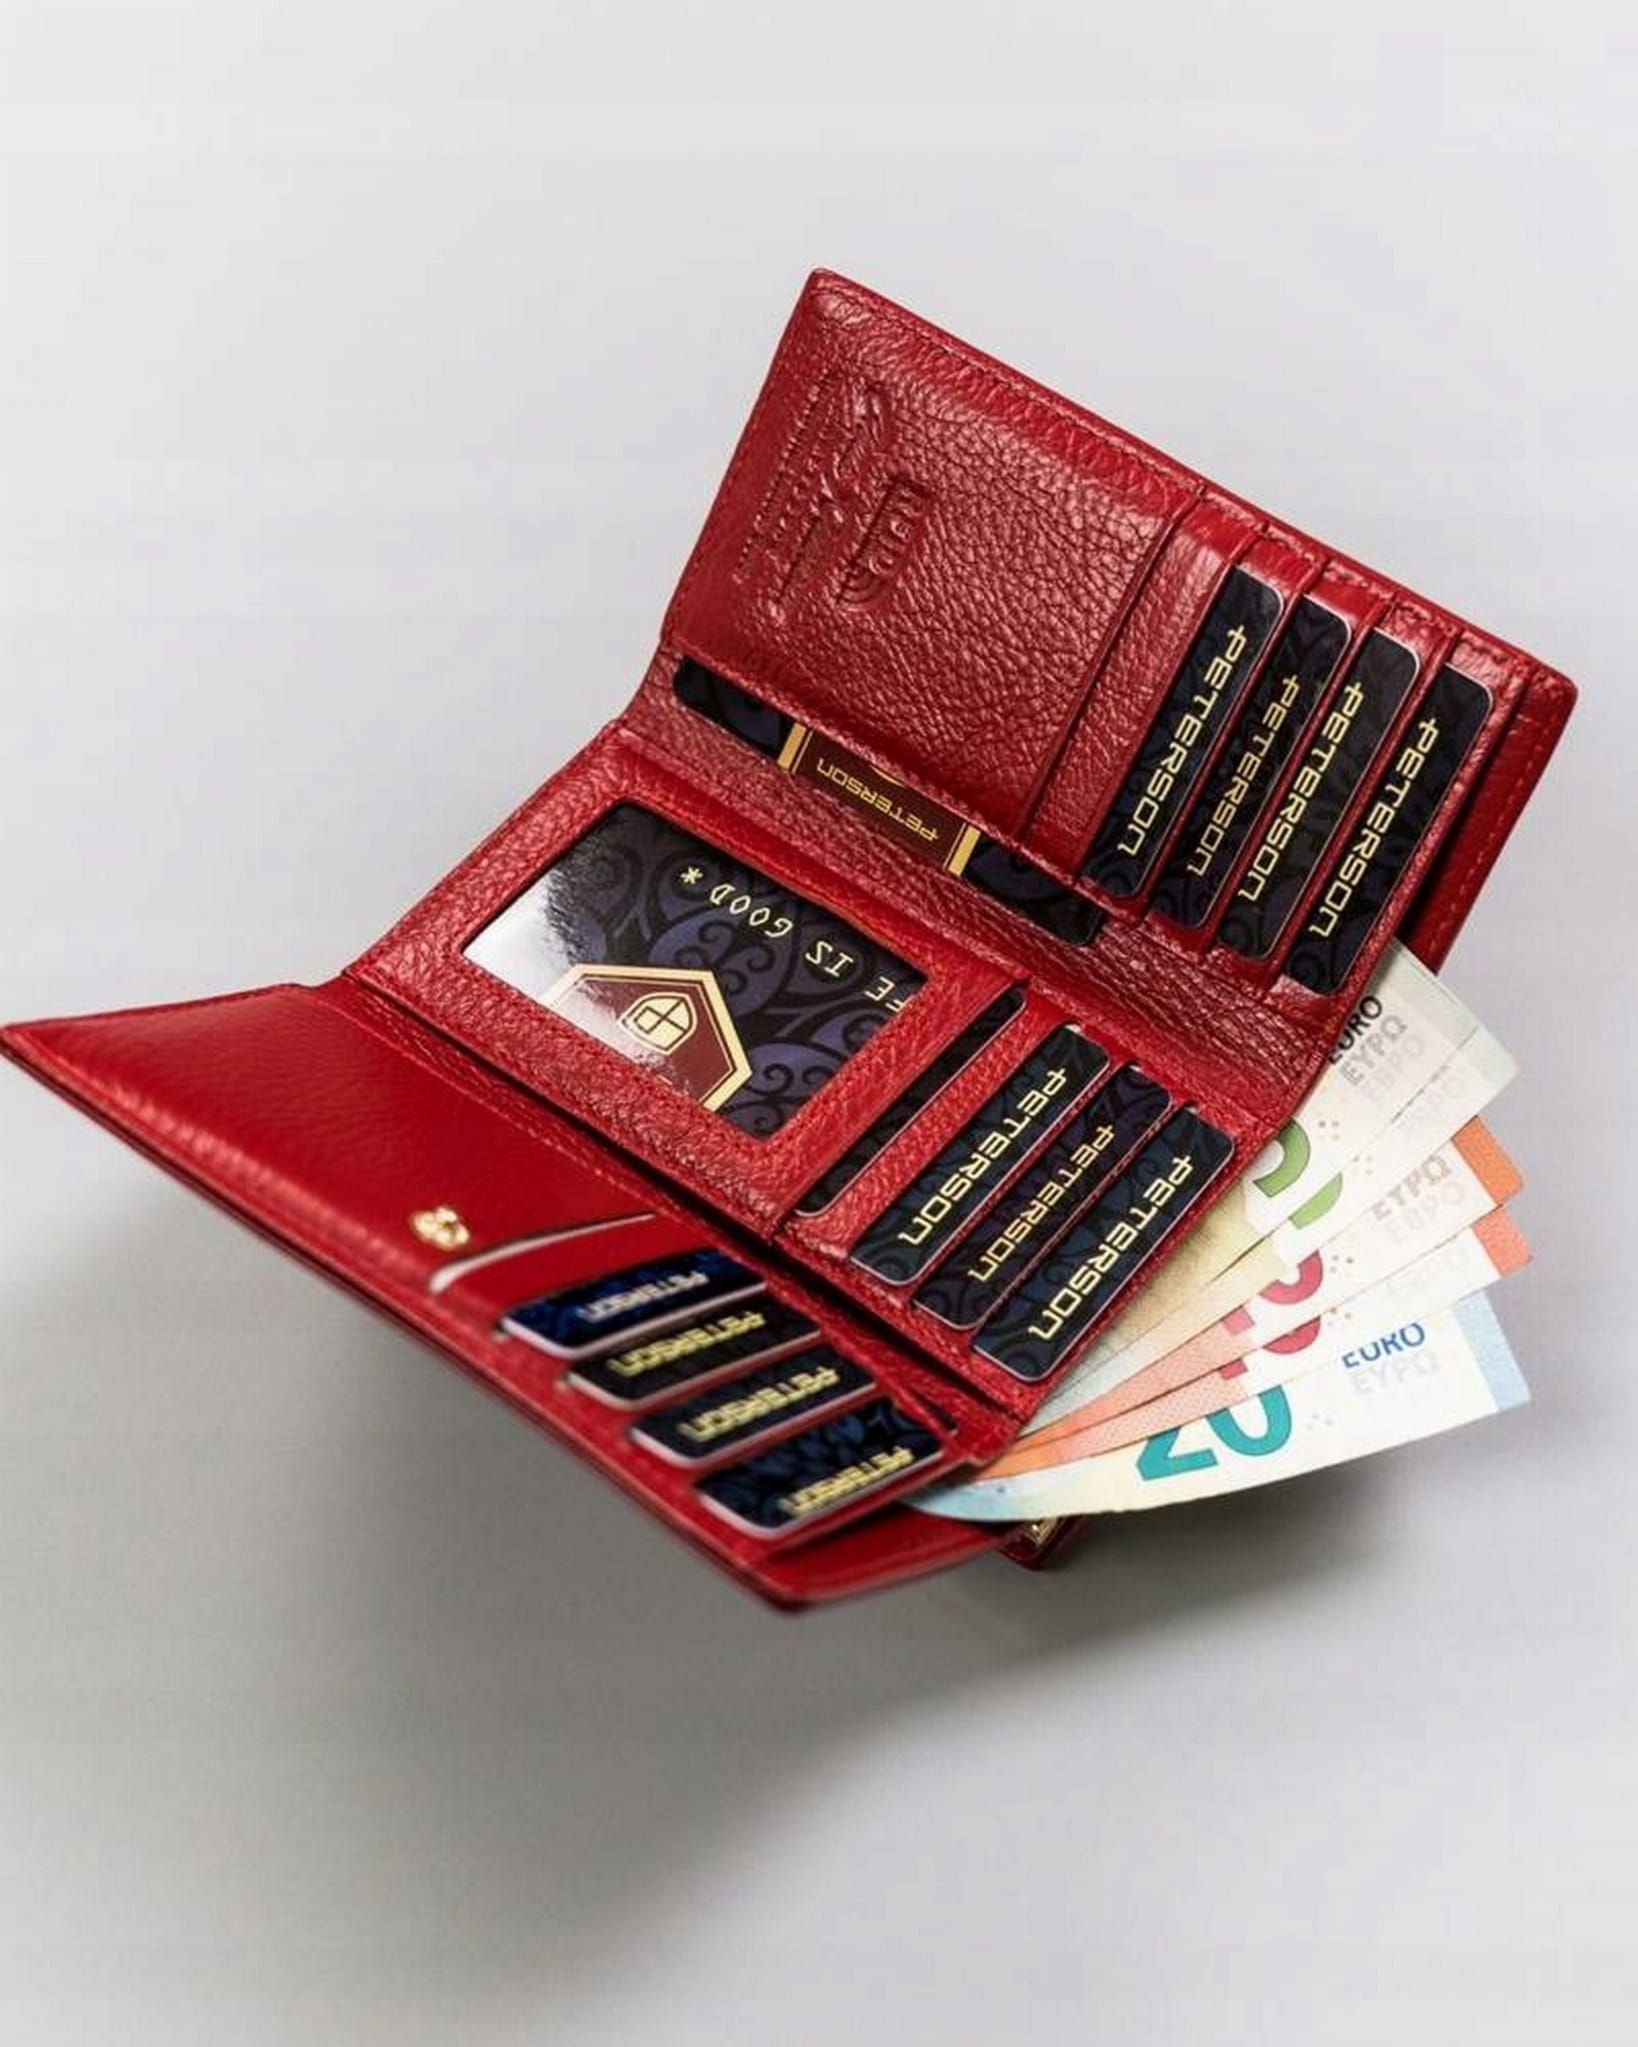 PETERSON portfel damski skórzany elegancki z biglem P176 czerwony